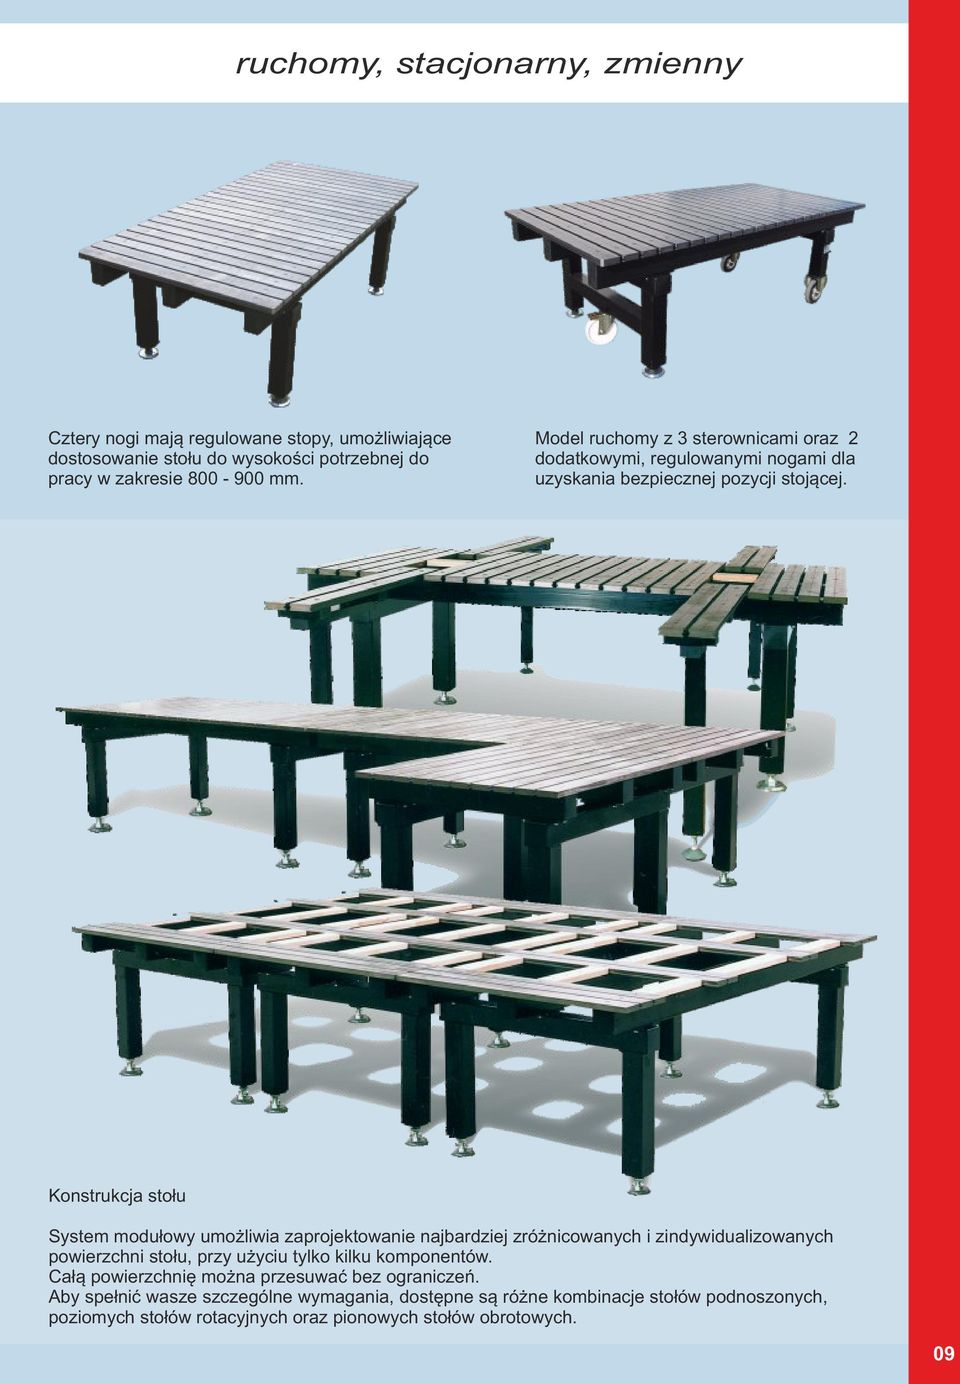 Konstrukcja stołu System modułowy umożliwia zaprojektowanie najbardziej zróżnicowanych i zindywidualizowanych powierzchni stołu, przy użyciu tylko kilku